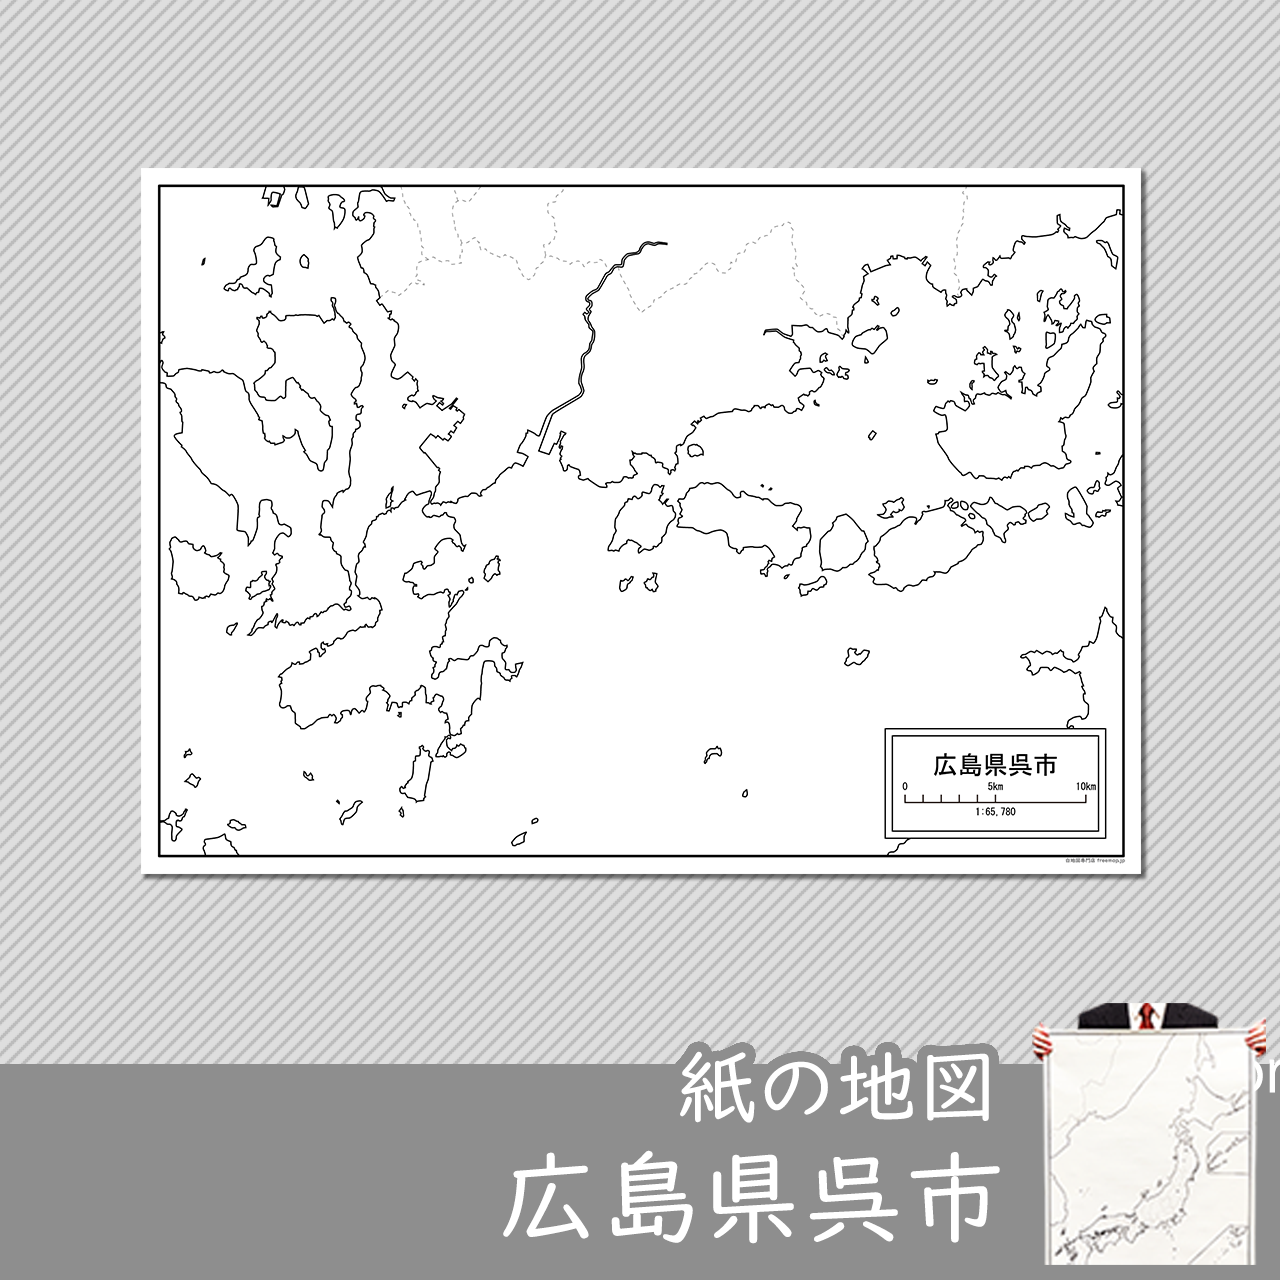 呉市の紙の白地図のサムネイル